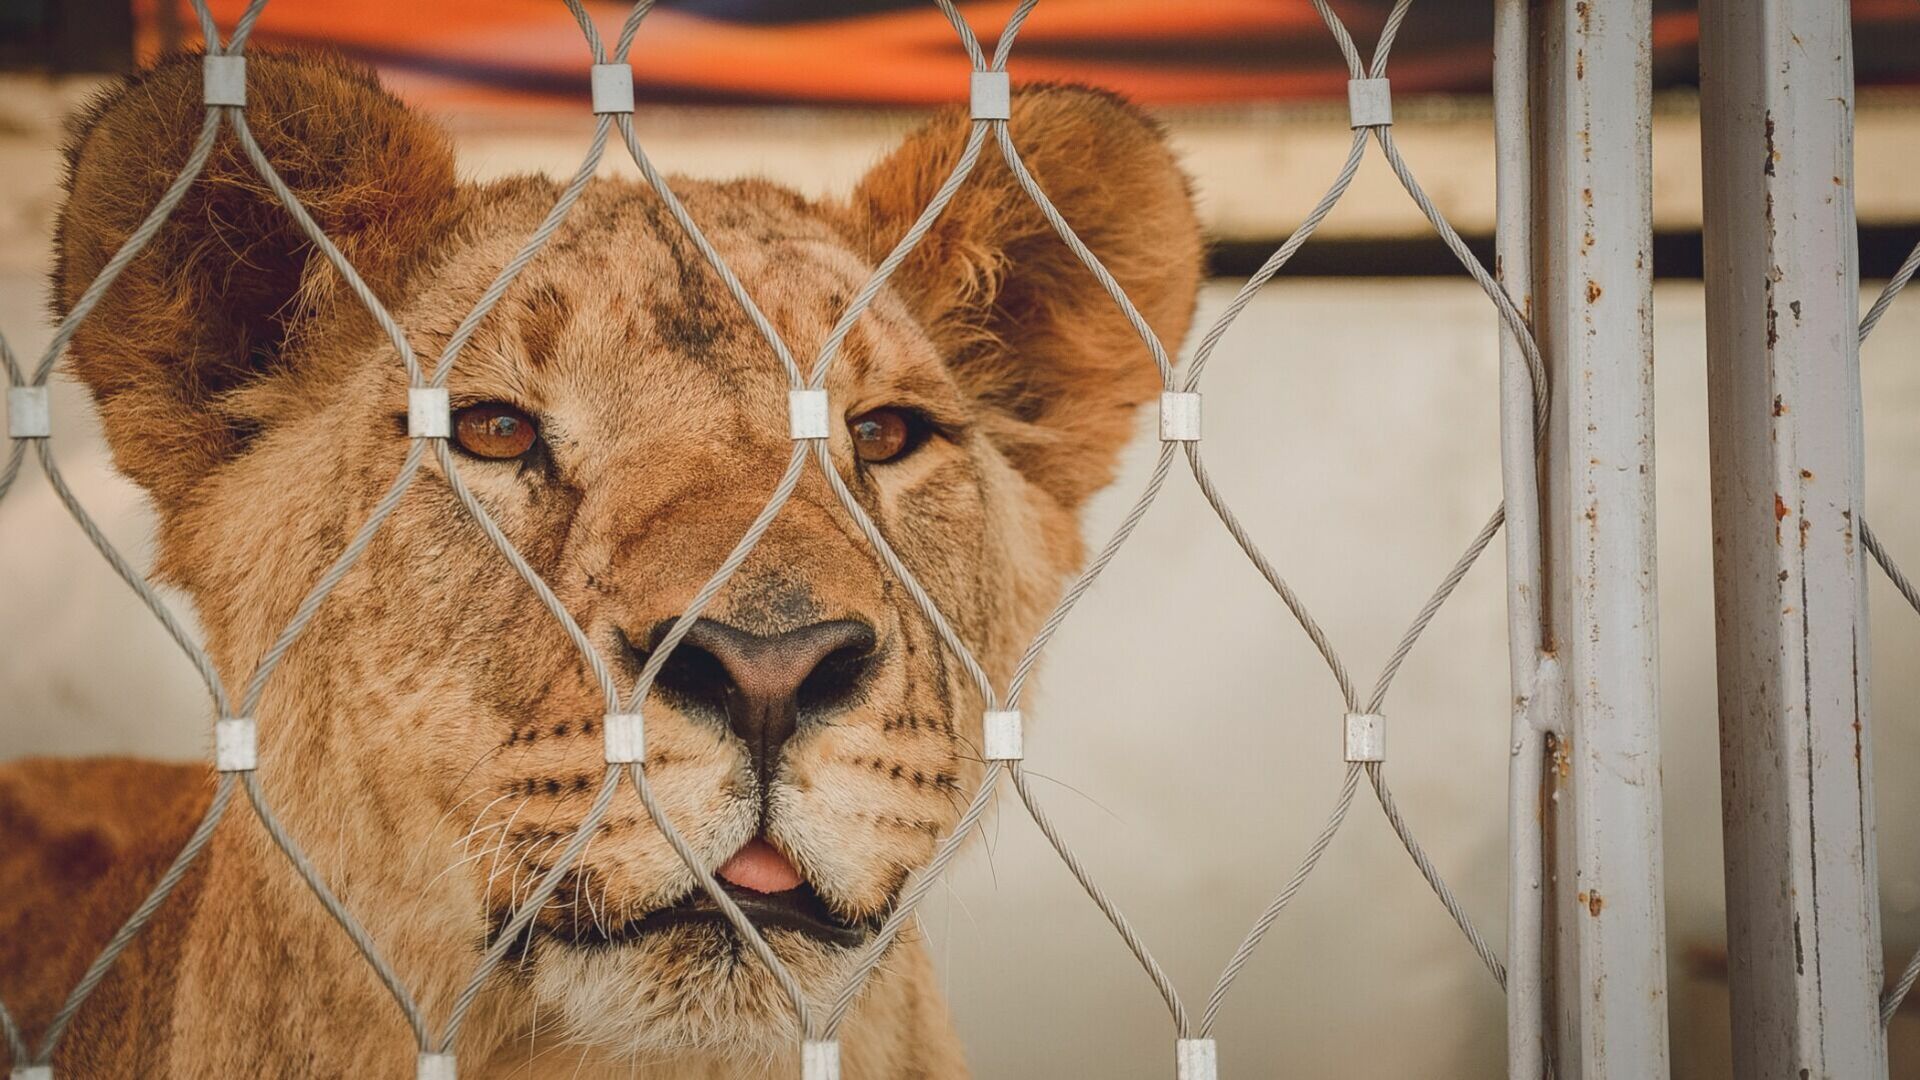 Сотрудники зоопарка рассказали подробности истории нападения льва в Приморье